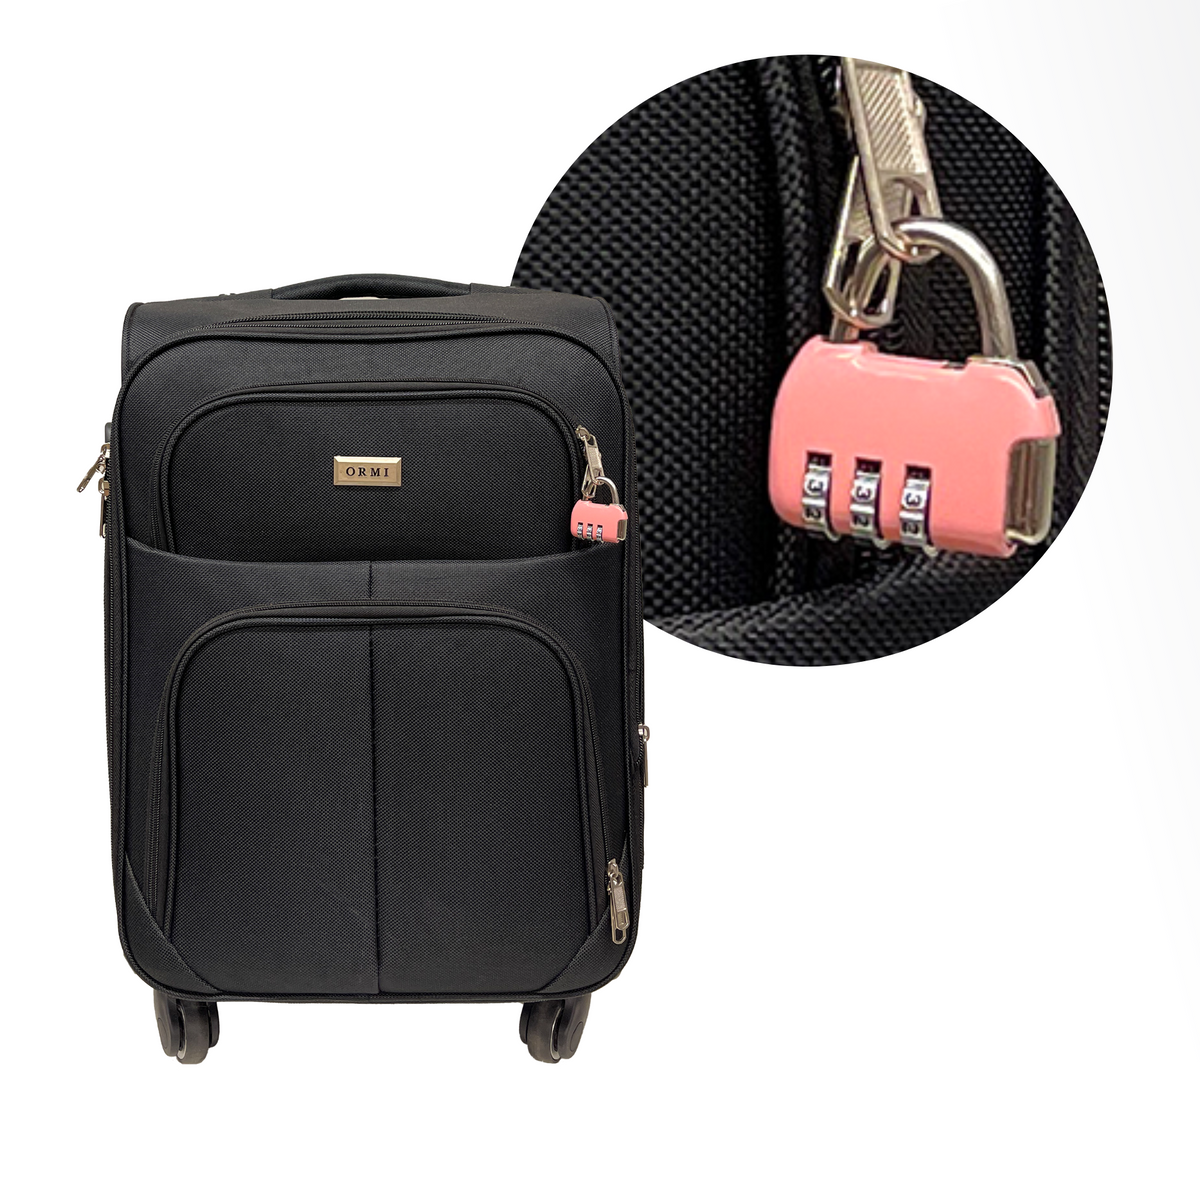 Zahlenschloss mit 3 Ziffern für Koffer, Gepäck, Reisetasche und Rucksäcke